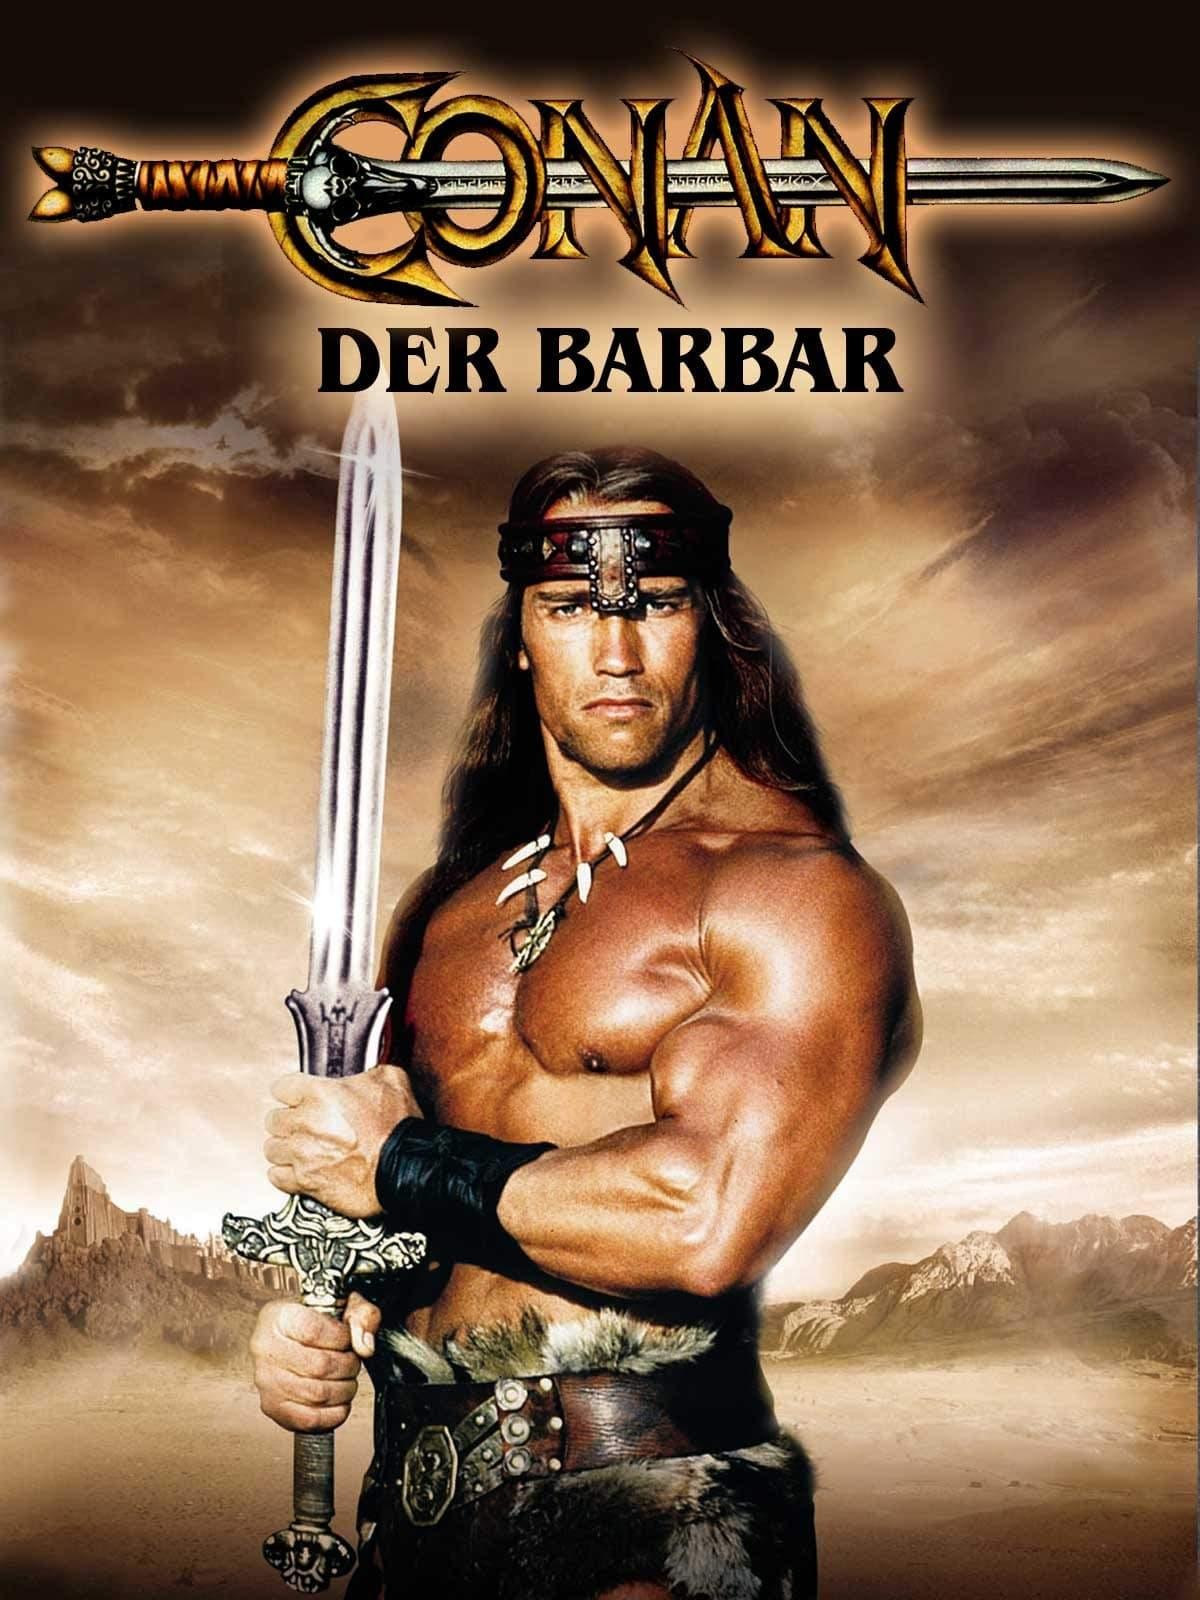 Conan, der Barbar poster